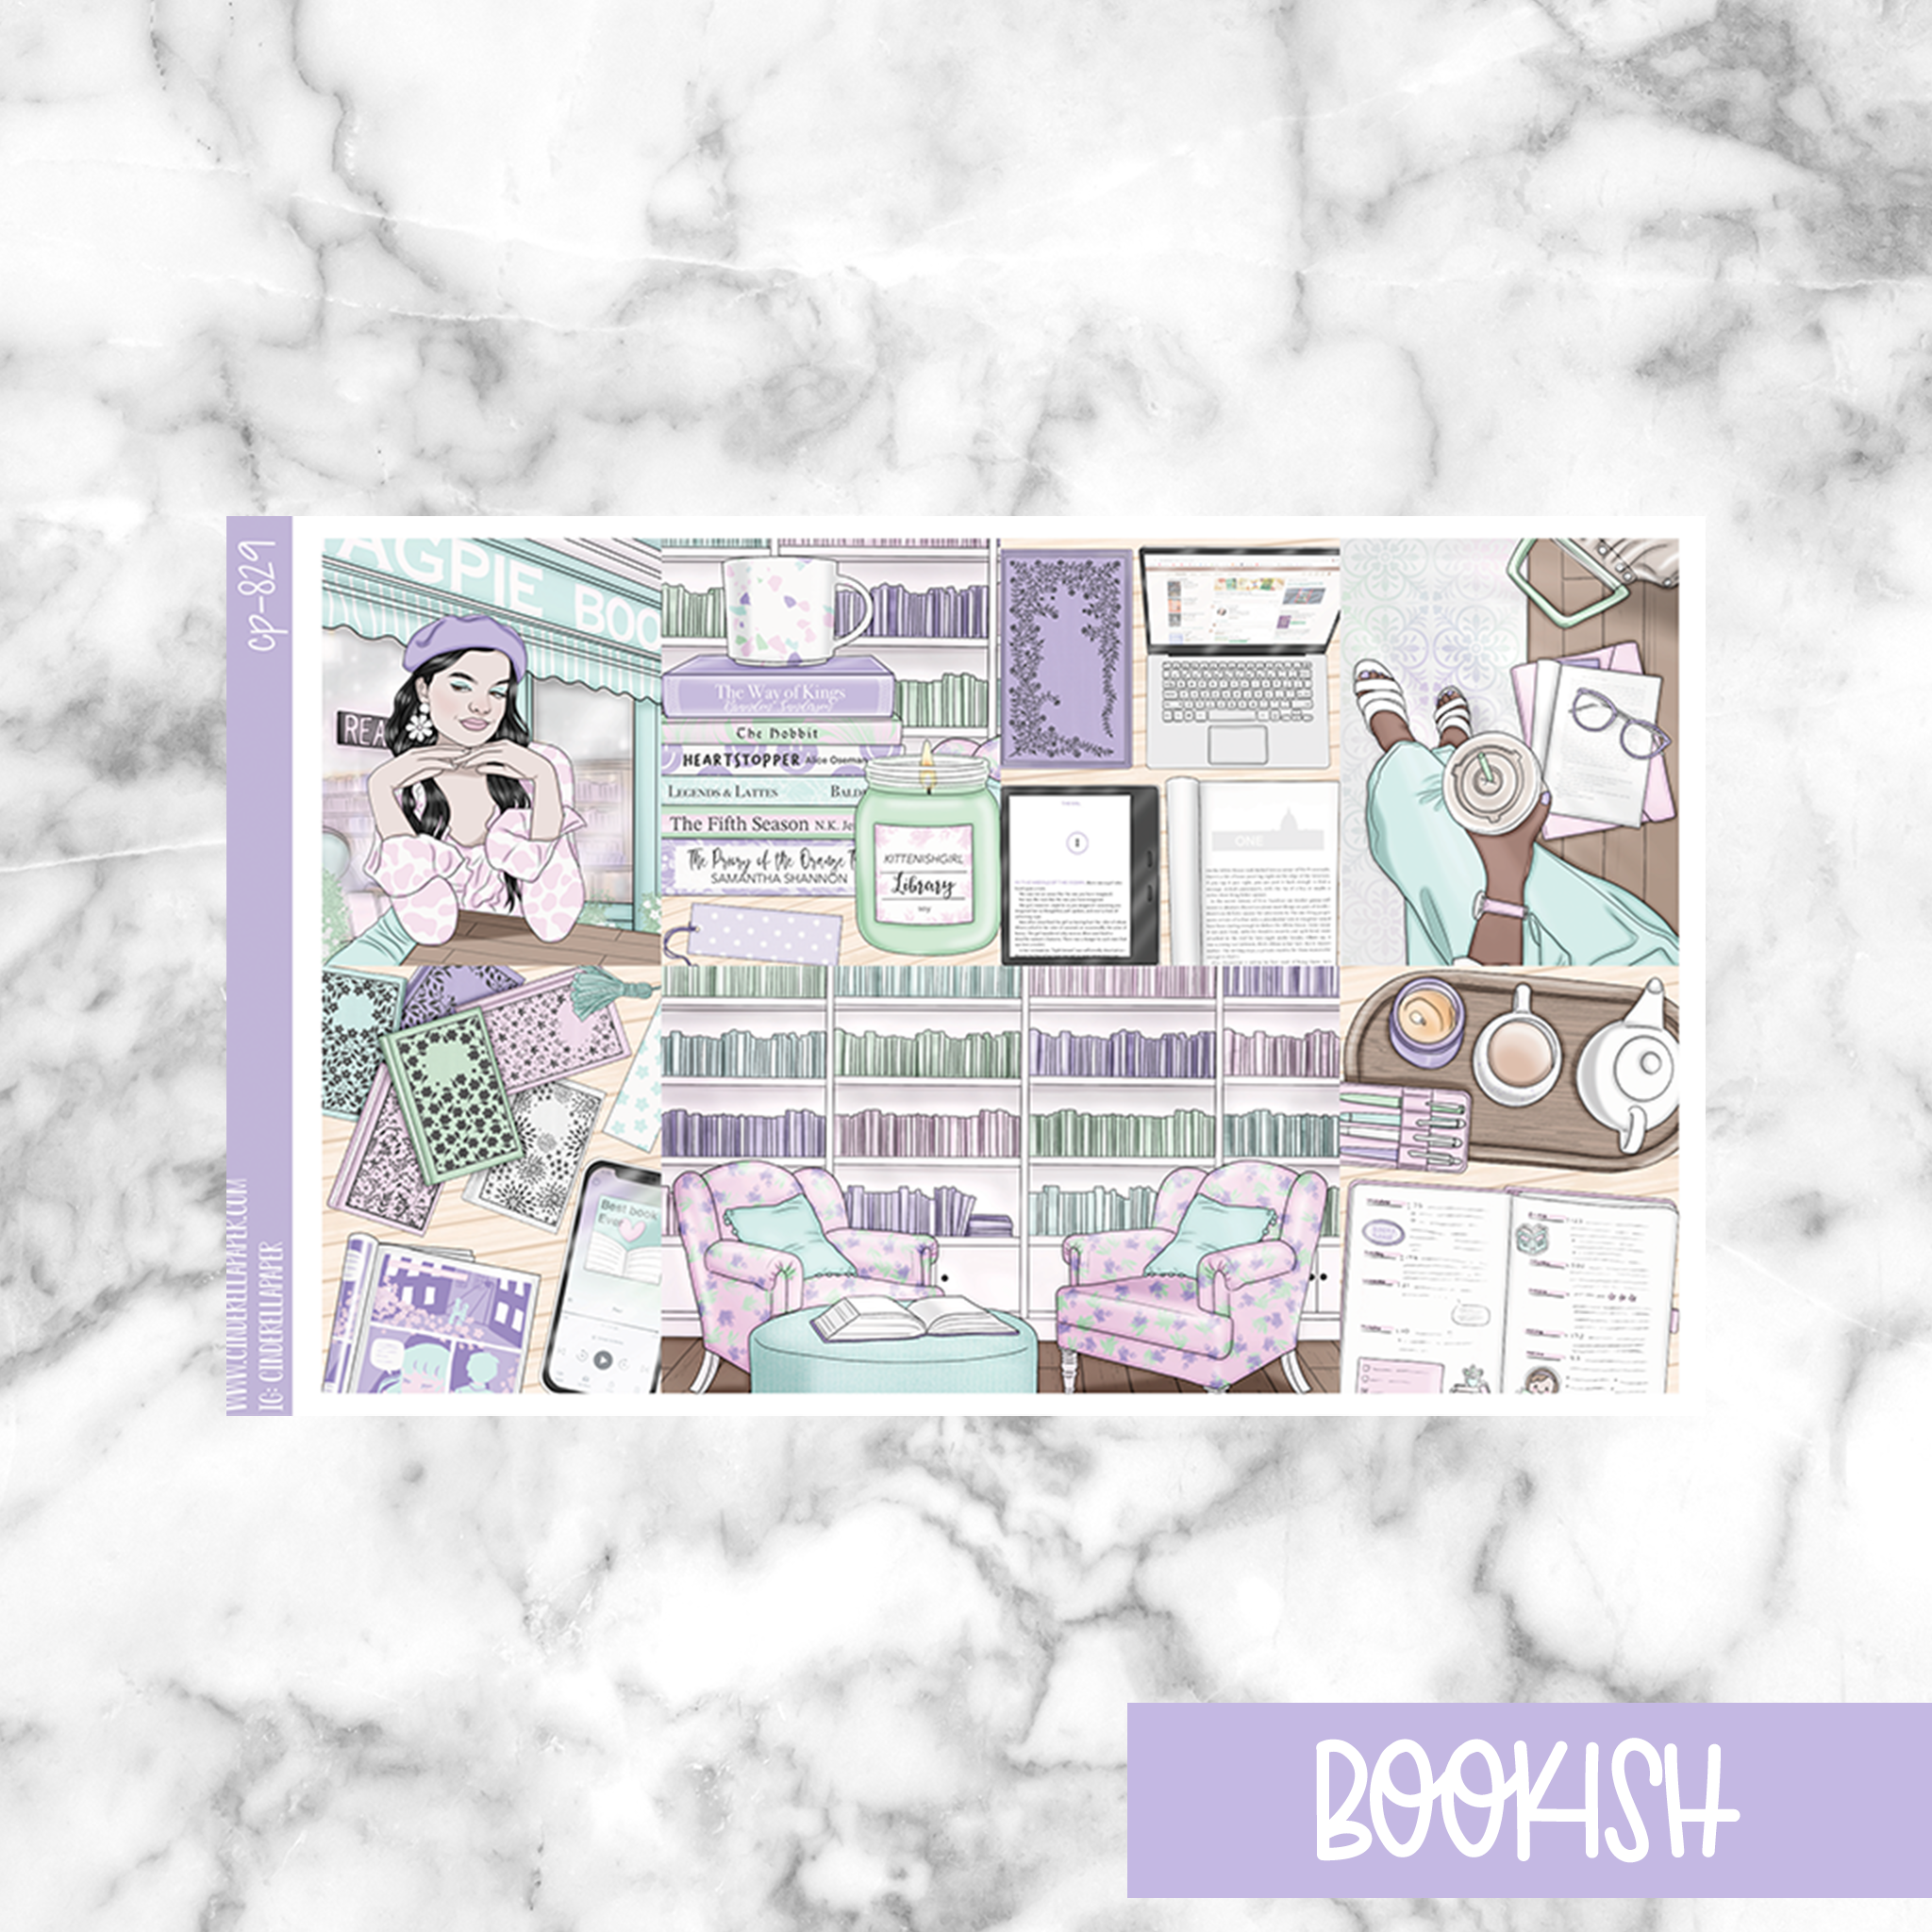 Bookish || Weekly Kit